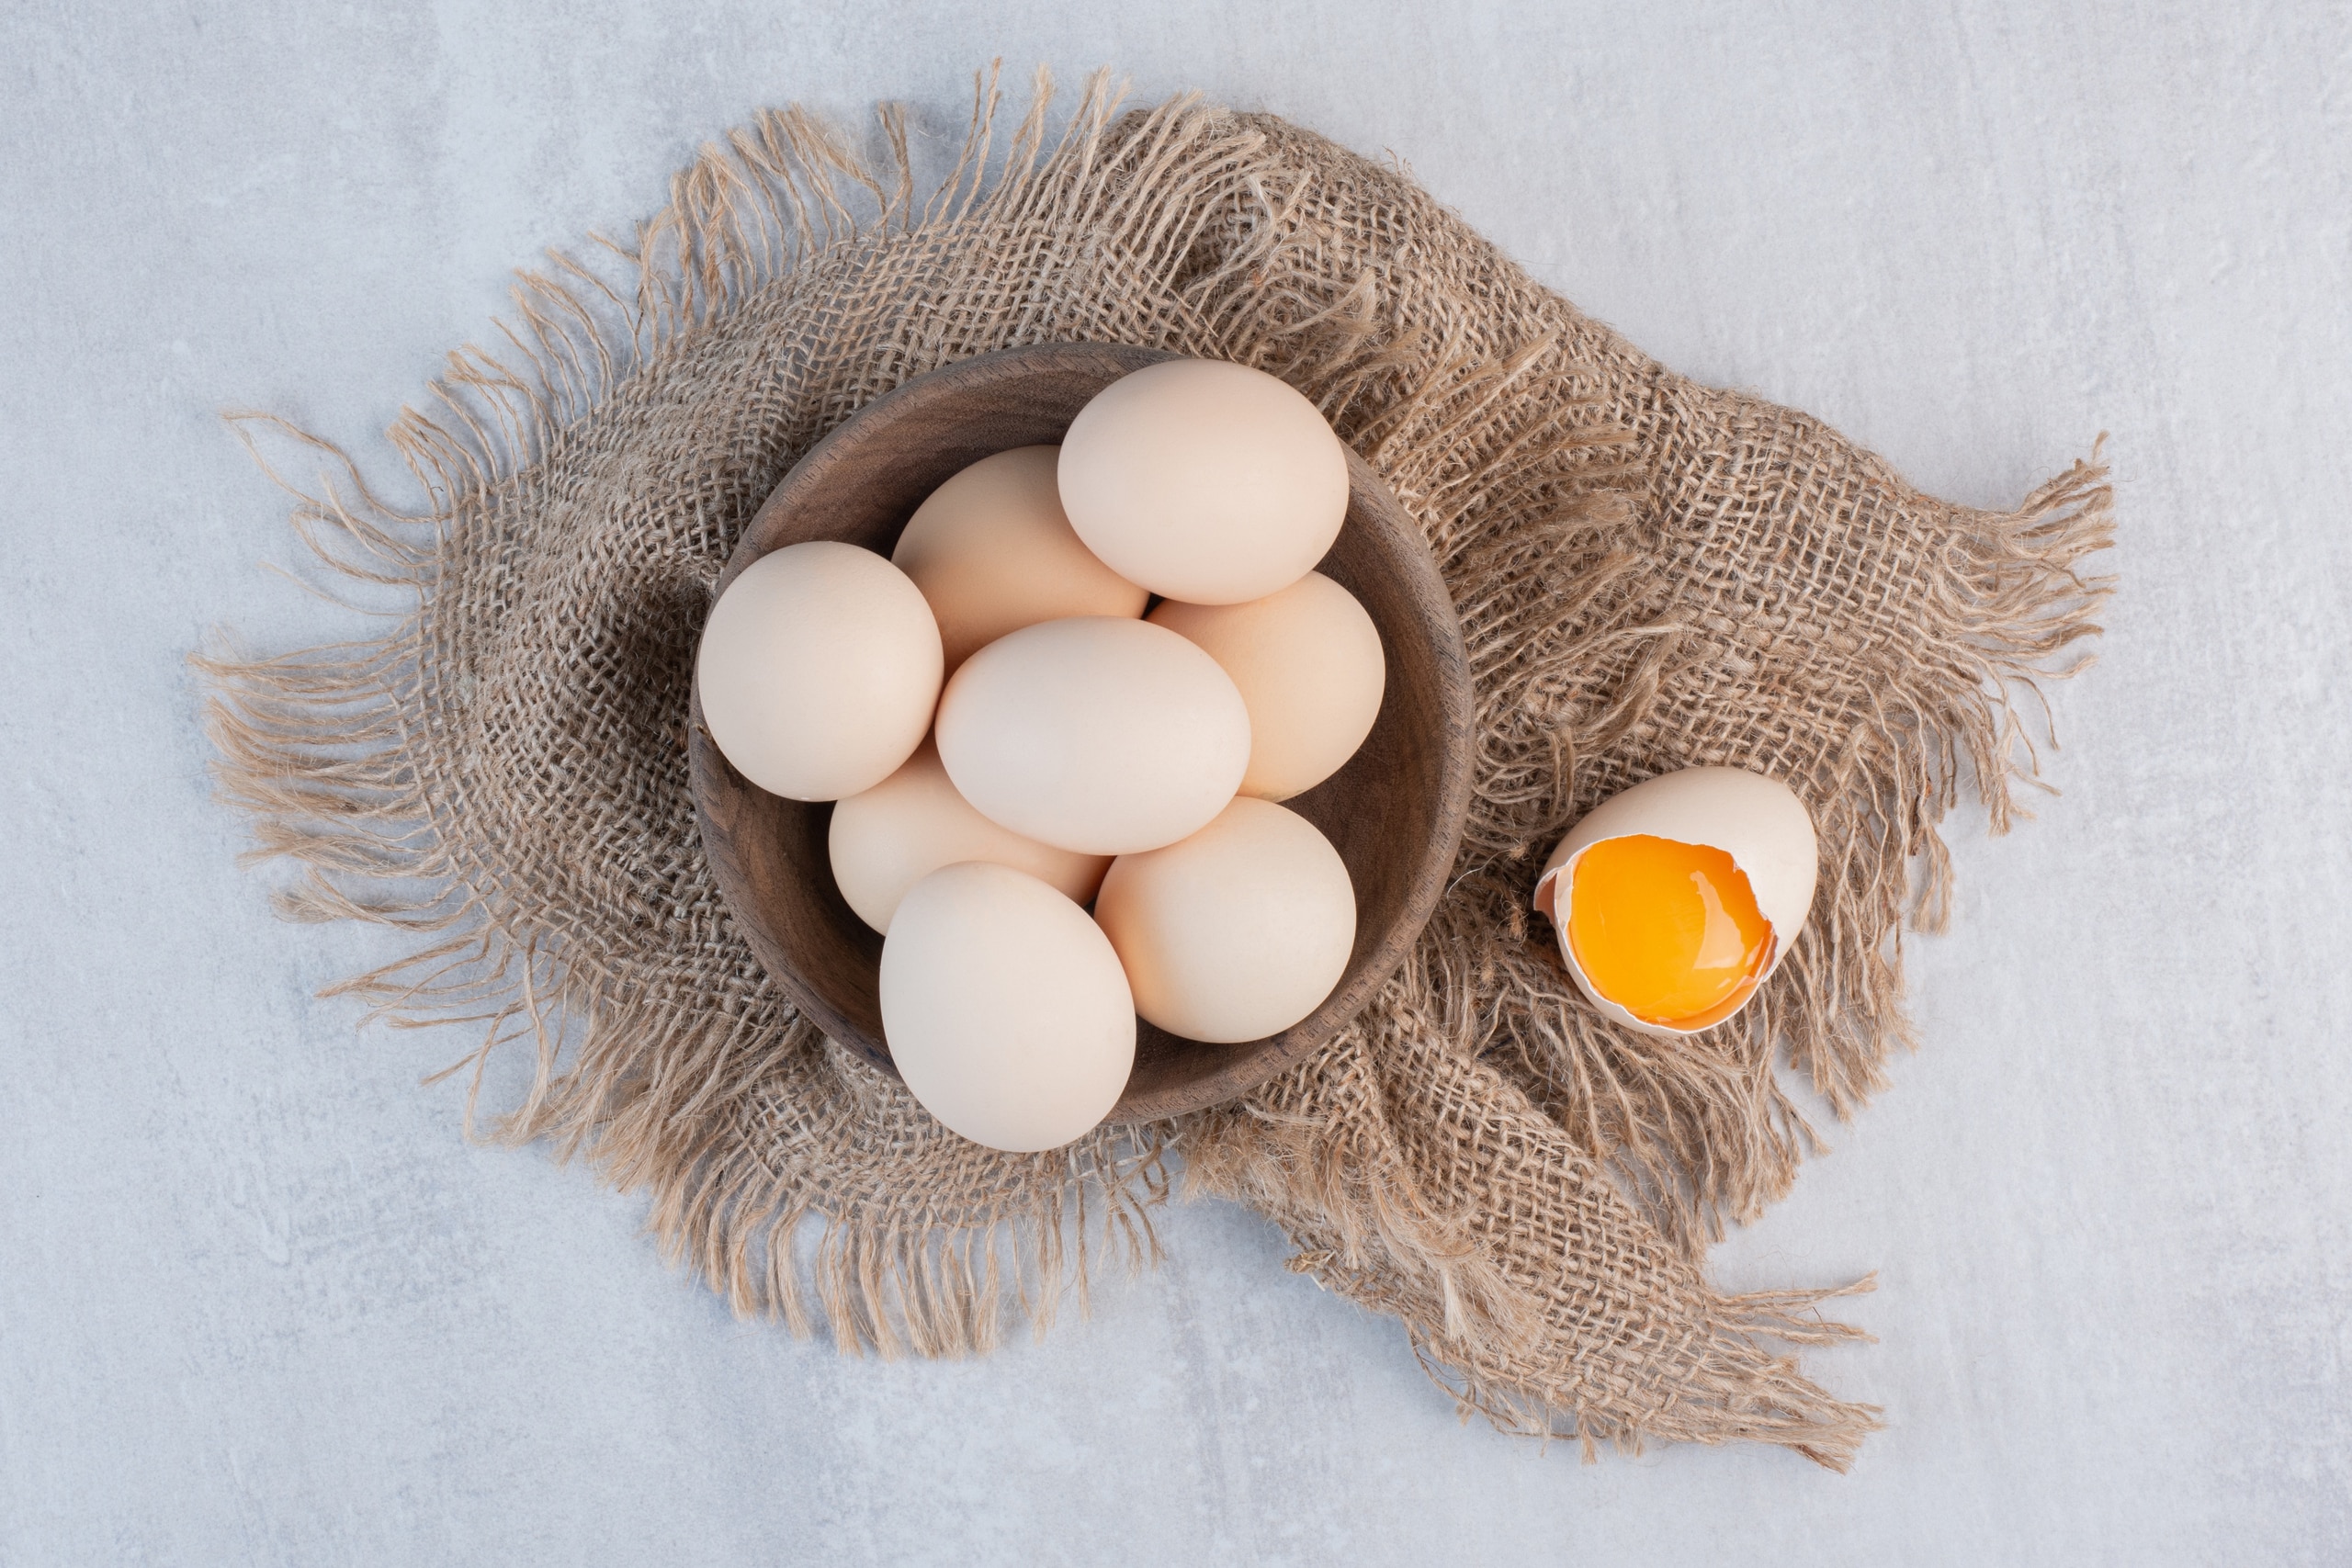 Trứng là thực phẩm giàu chất dinh dưỡng, ít calo nhưng chứa nhiều protein